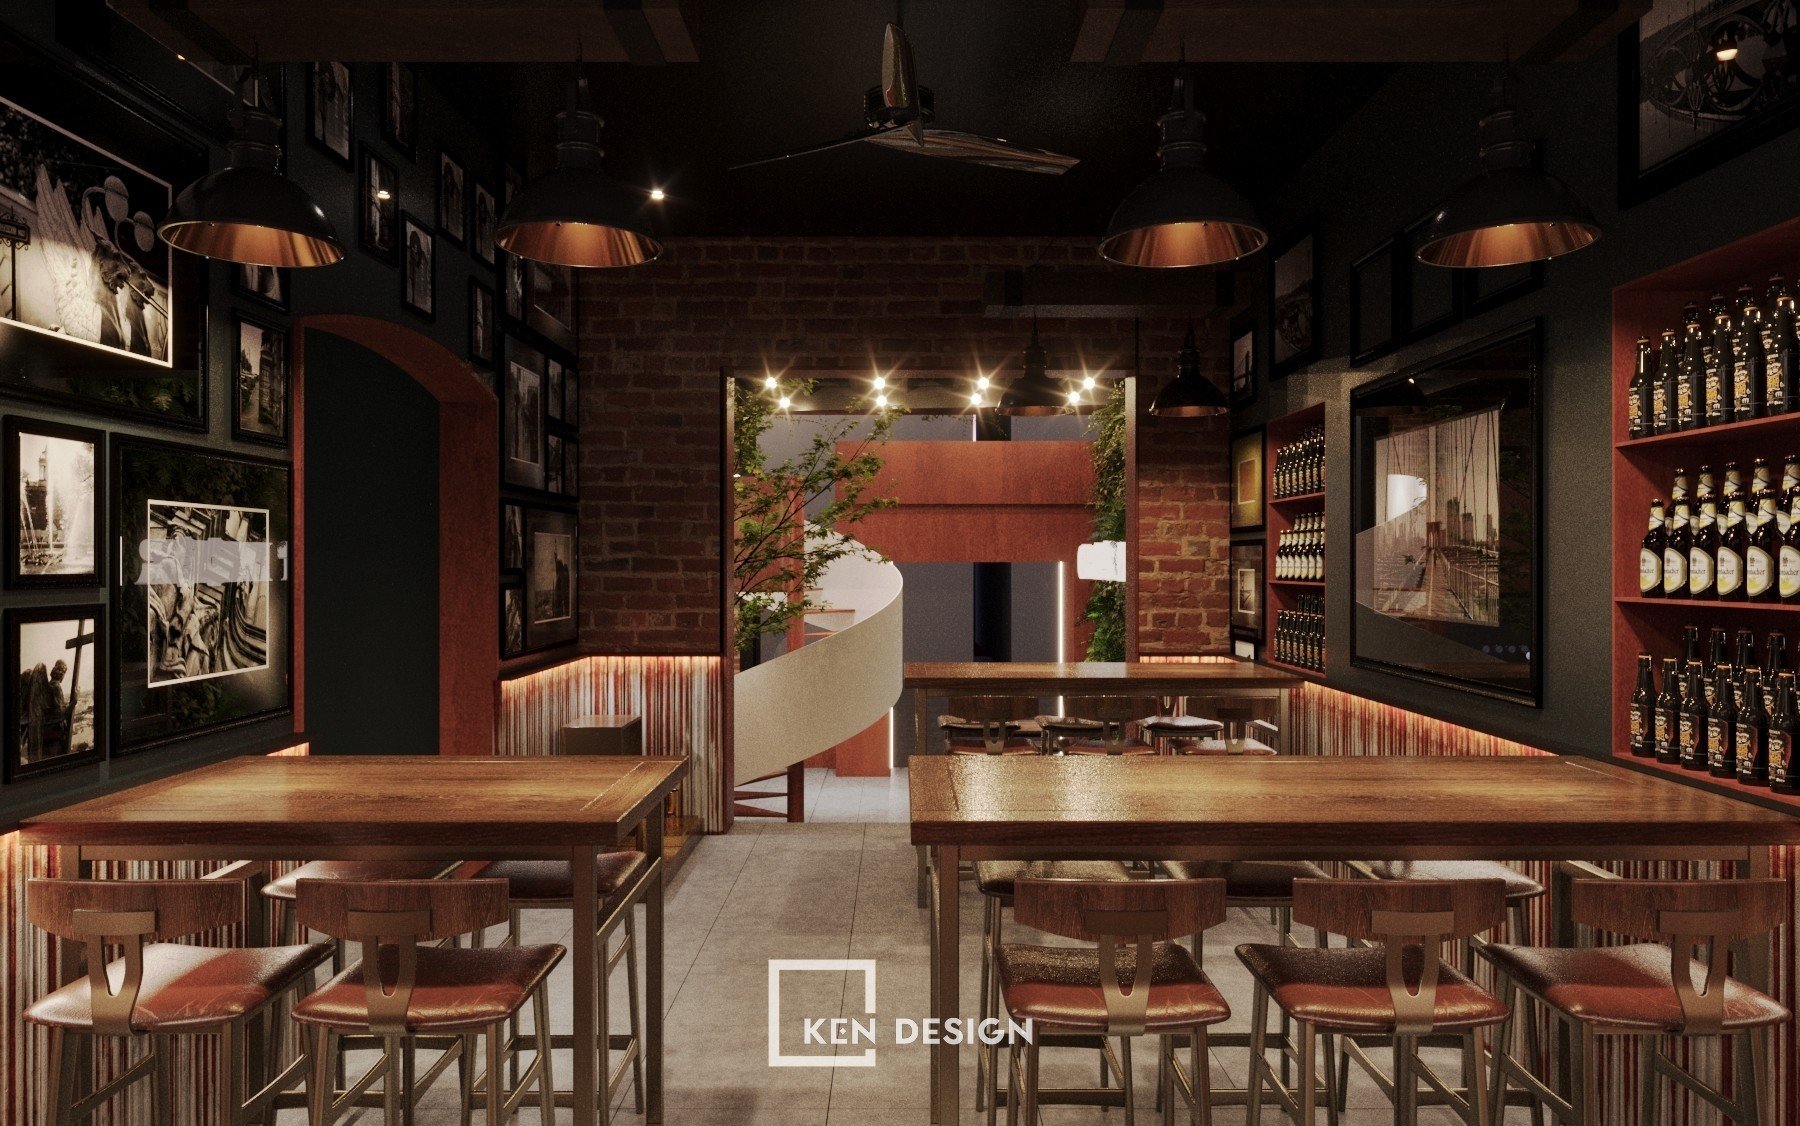 thiet ke nha hang bia 8 - Thiết kế nhà hàng bia độc lạ, phóng khoáng tại Hà Nội